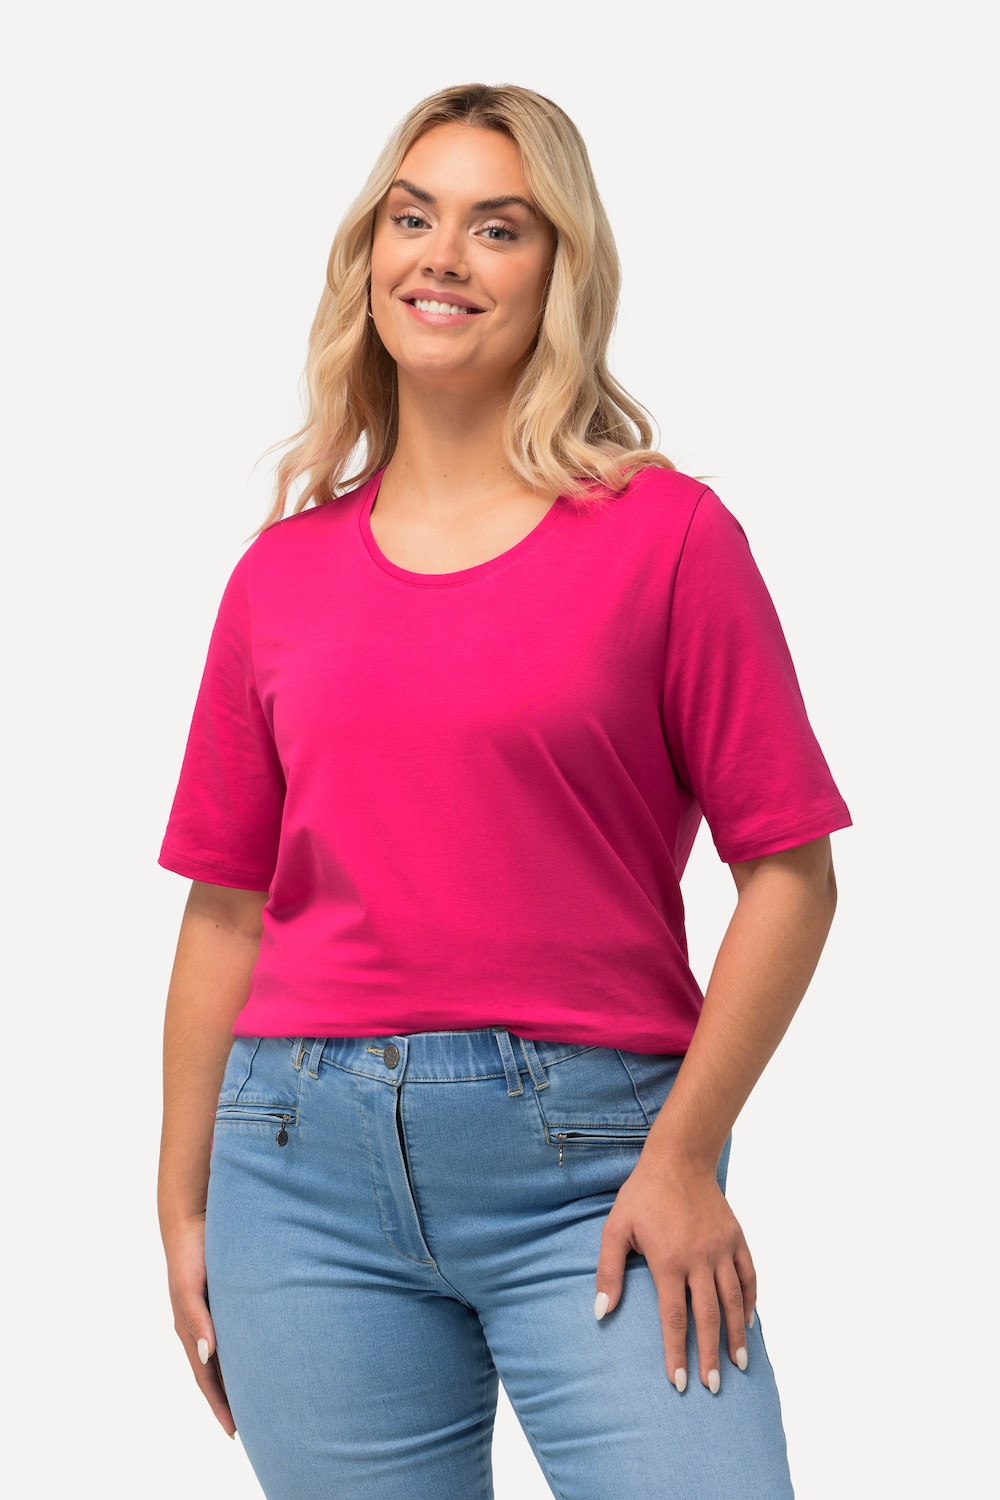 Große Größen T-Shirt, Damen, rosa, Größe: 42/44, Baumwolle, Ulla Popken von Ulla Popken